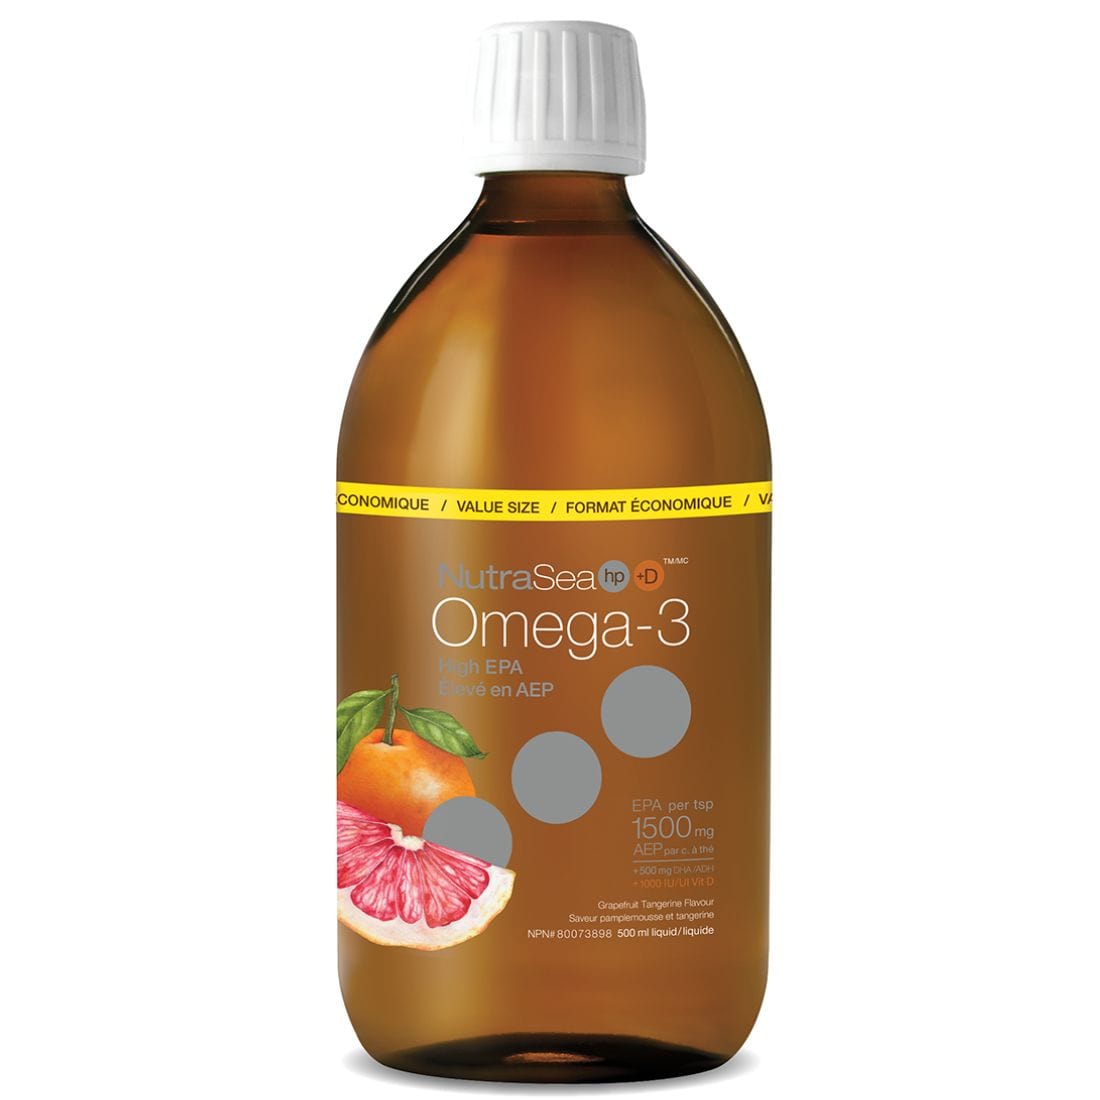 NutraSea HP +D Omega-3 High EPA Grapefruit Tangerine